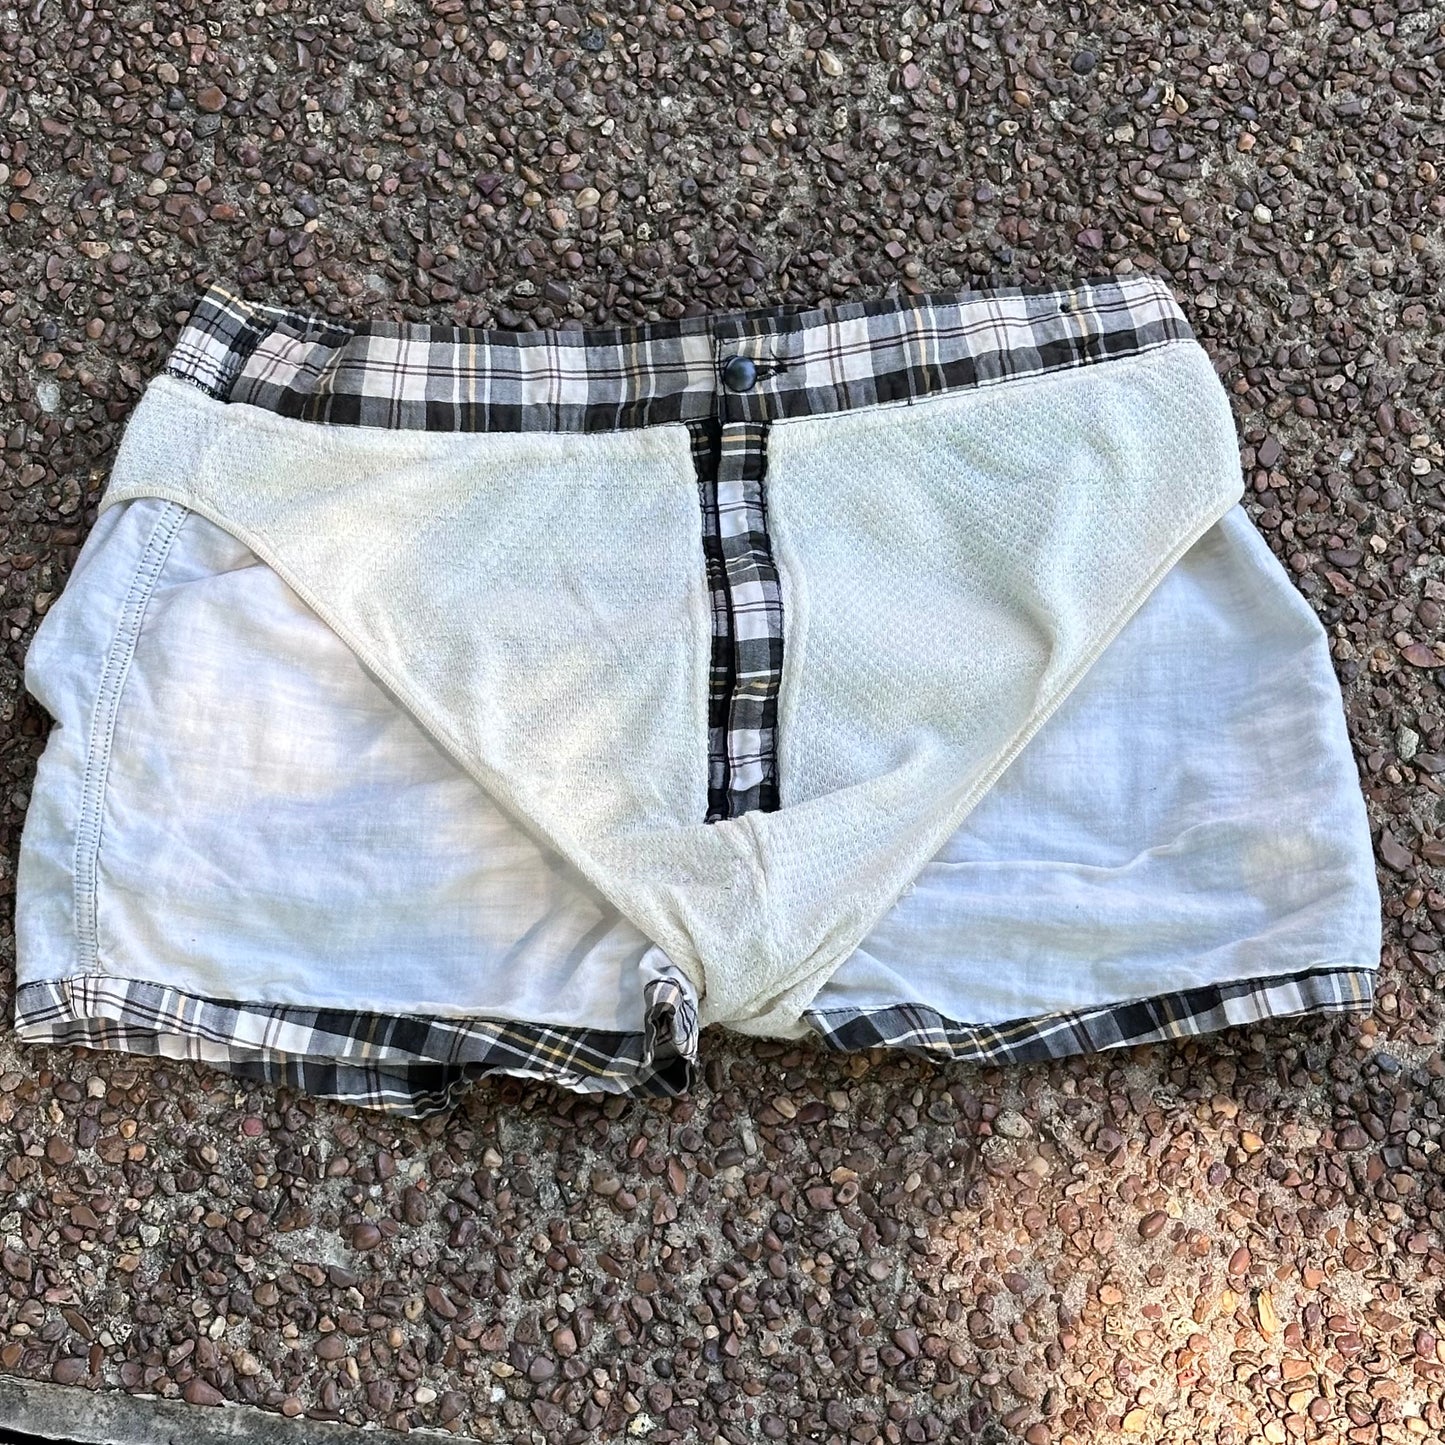 1950s Men’s Plaid Swim Trunks, Jantzen Size Medium, Cotton Swimsuit Shorts